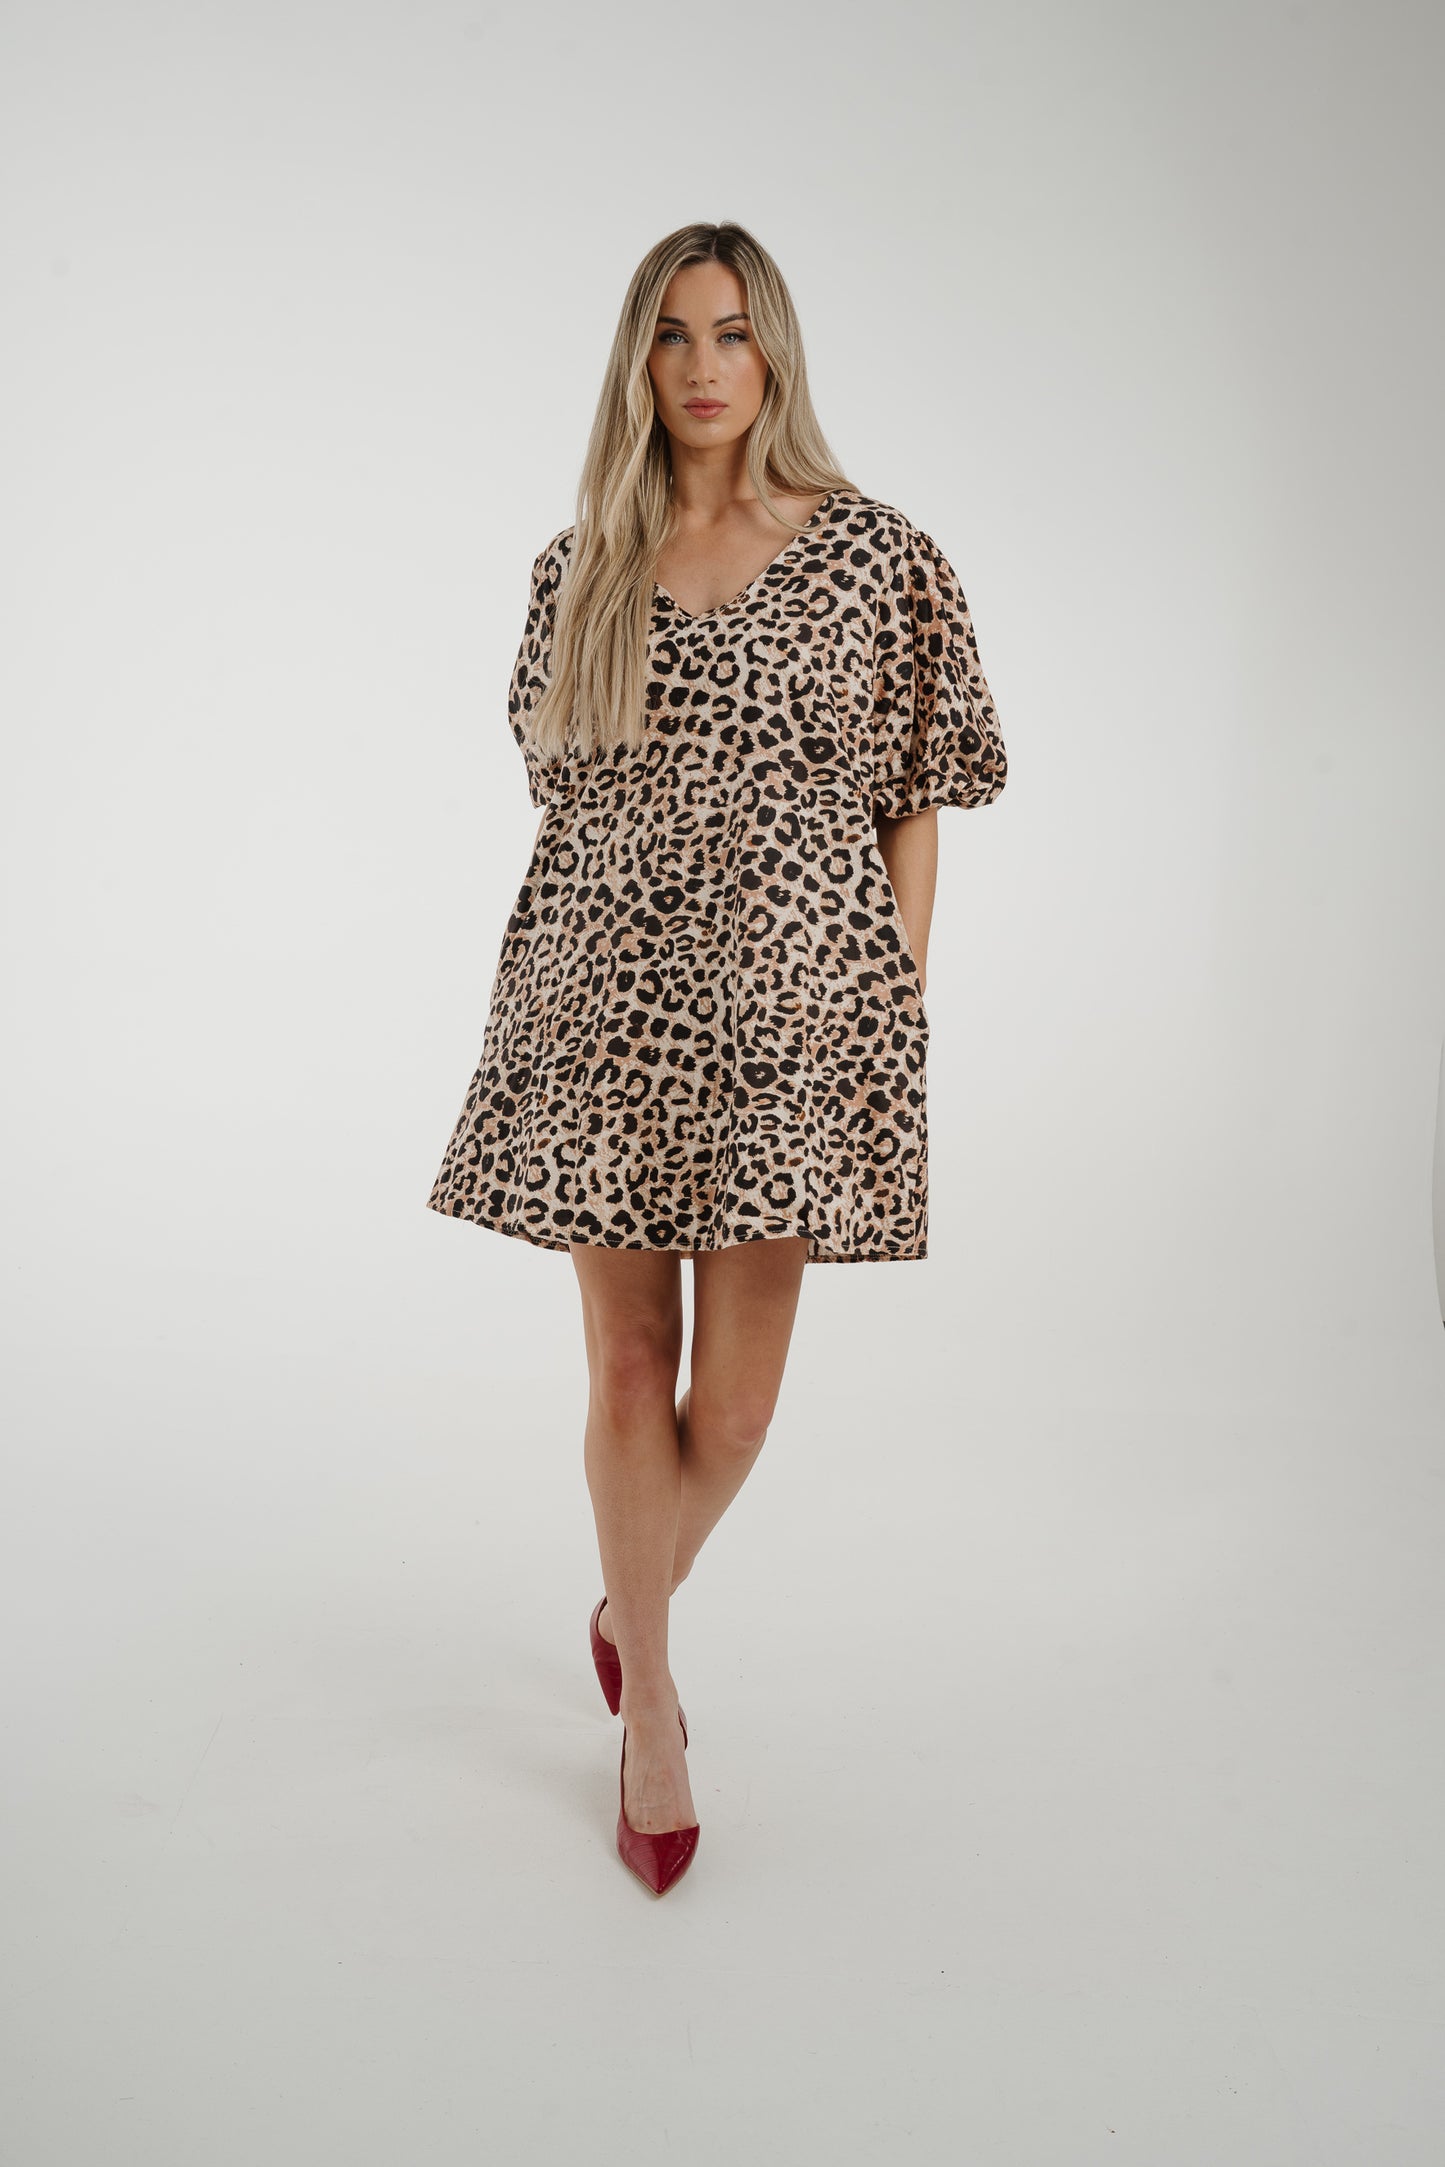 Poppy Puff Sleeve Dress In Leopard Print